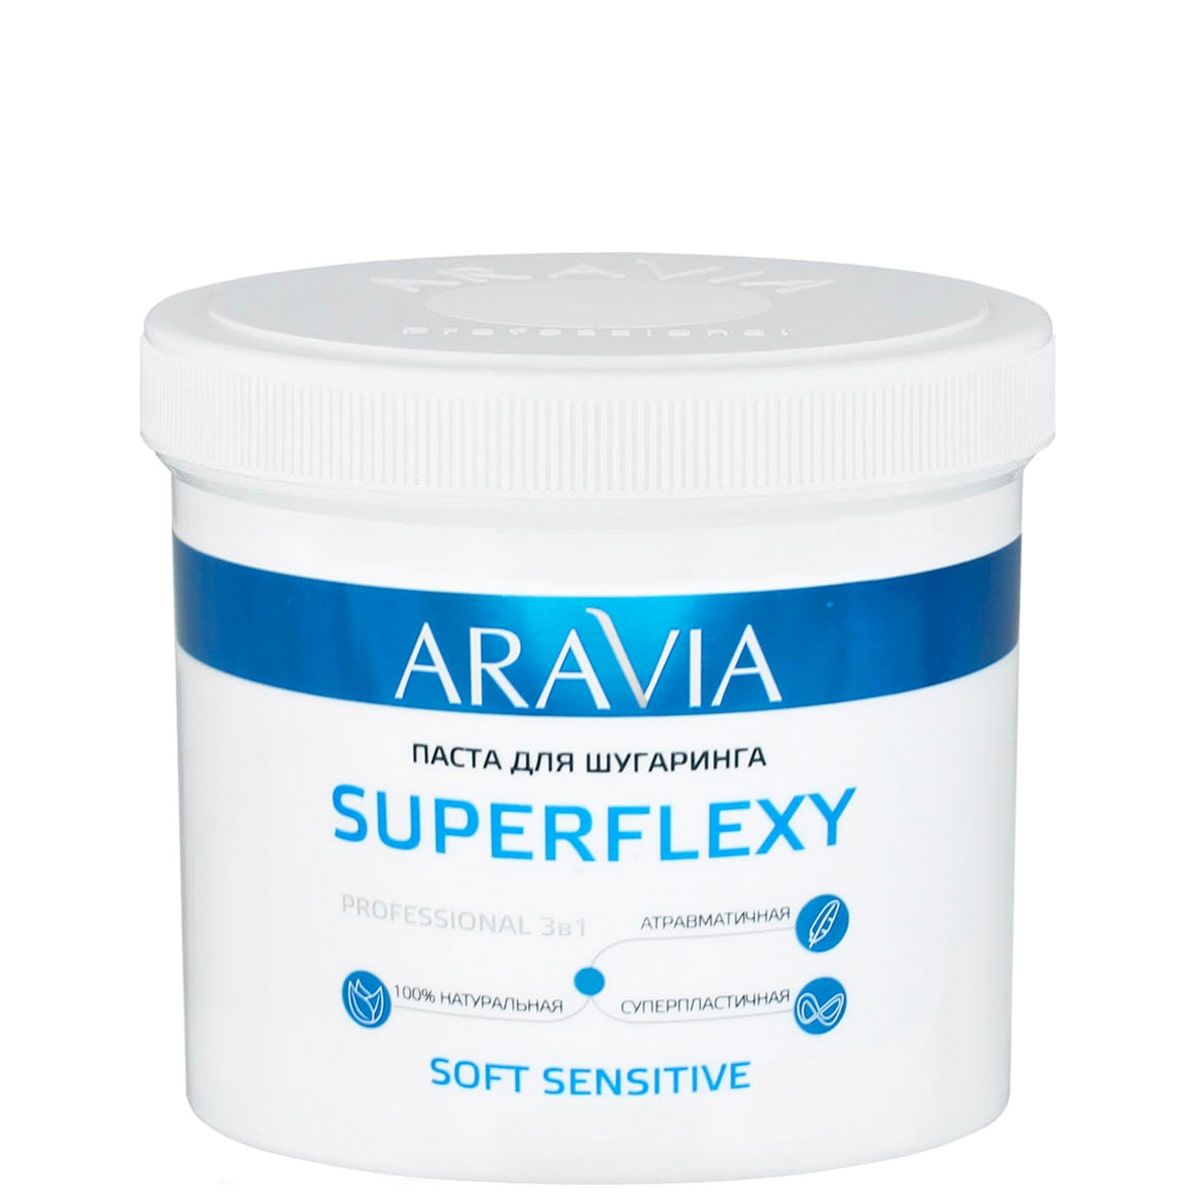 ARAVIA Prof Сахарная паста SUPERFLEXY Soft Sensitive, 750 гр для чувствительной кожи.